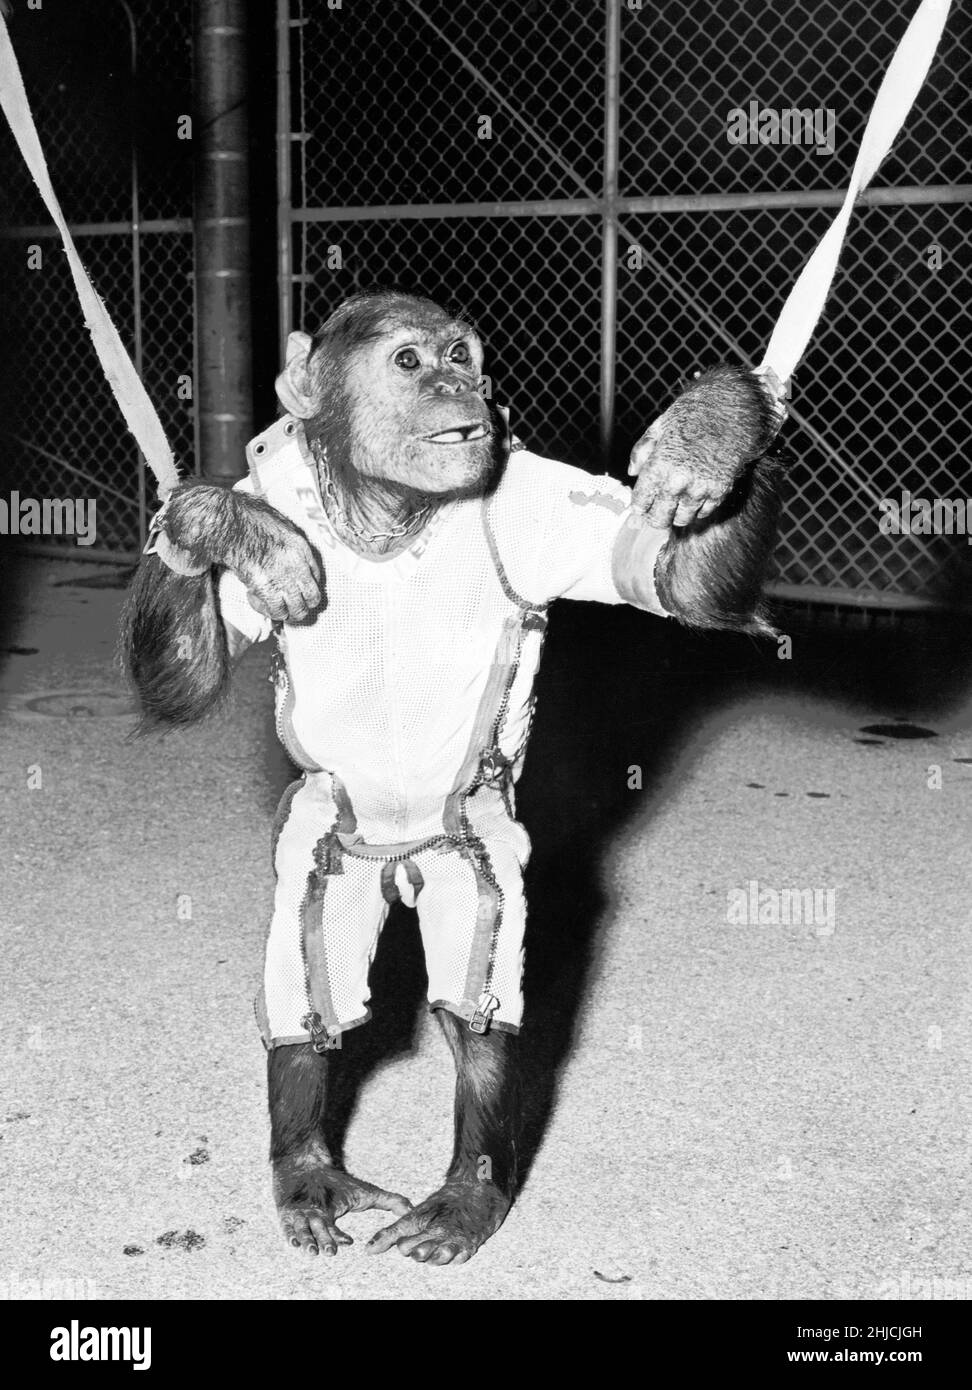 Enos con un traje espacial y las muñecas. Enos (d. El 4 de noviembre de 1962) fue el chimpa de 2nd lanzado al espacio y el primer chimpa en lograr la órbita terrestre. El vuelo de Enos ocurrió el 29 de noviembre de 1961. Su entrenamiento fue más intenso para él que para su predecesor Ham, porque Enos estuvo expuesto a la ingravidez y a mayores gs por períodos de tiempo más largos. Su entrenamiento incluyó instrucción psicomotora y vuelos de avión. Enos murió de disentería relacionada con la shigelosis, que era resistente a los antibióticos conocidos en ese momento. Los patólogos no reportaron síntomas que pudieran ser atribuidos o relacionados con su vuelo espacial. Foto de stock